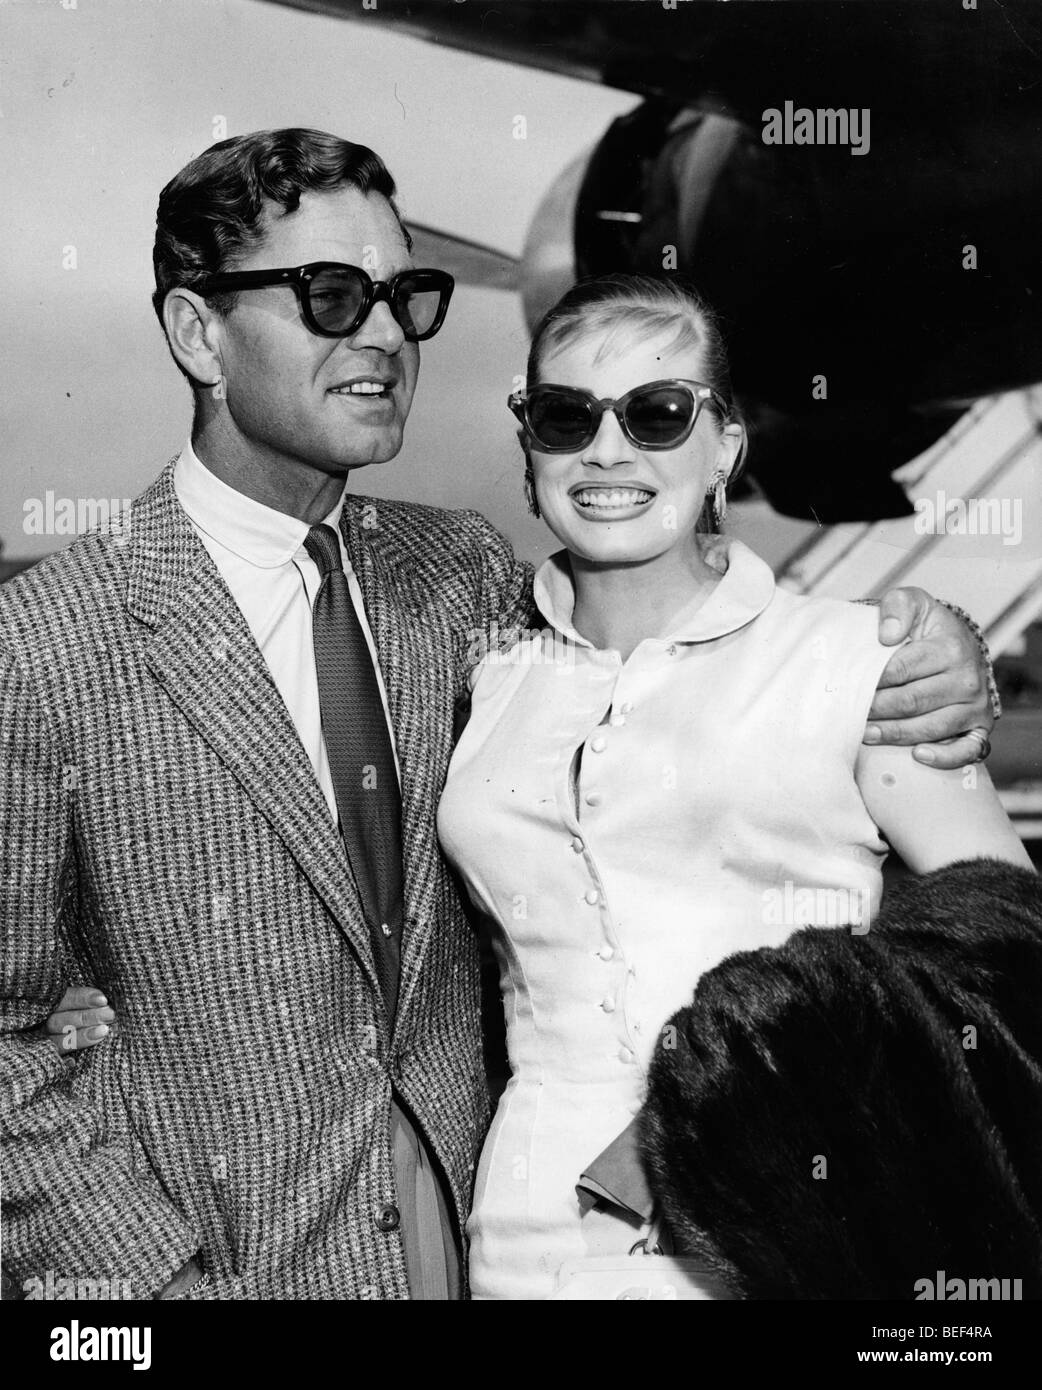 Schwedische Schauspielerin Anita Ekberg mit ihrem Ehemann, der britische Schauspieler Anthony Steele, Ankunft am Flughafen von London im Jahr 1956. Stockfoto